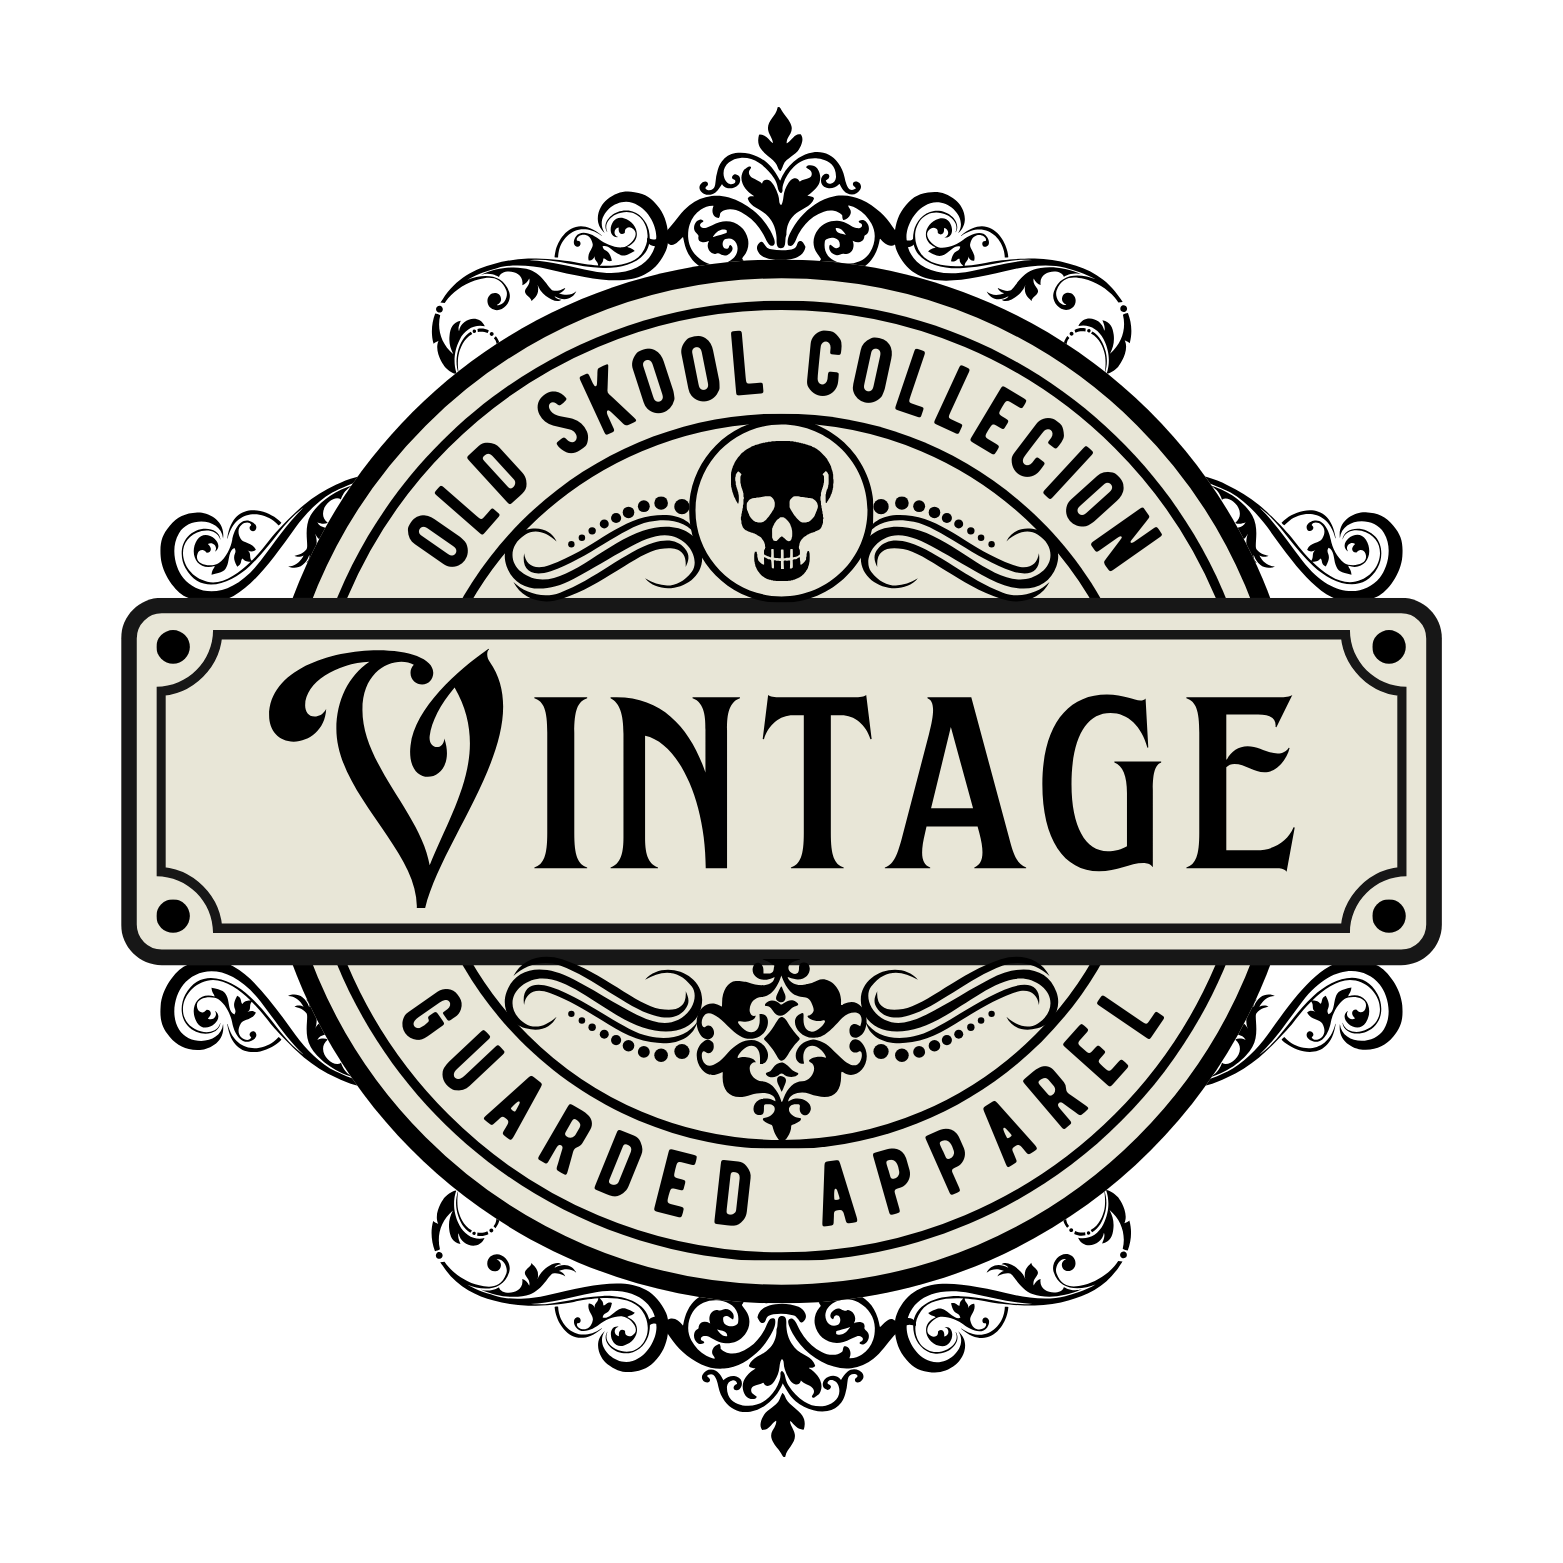 Old Skool Vintage Collection